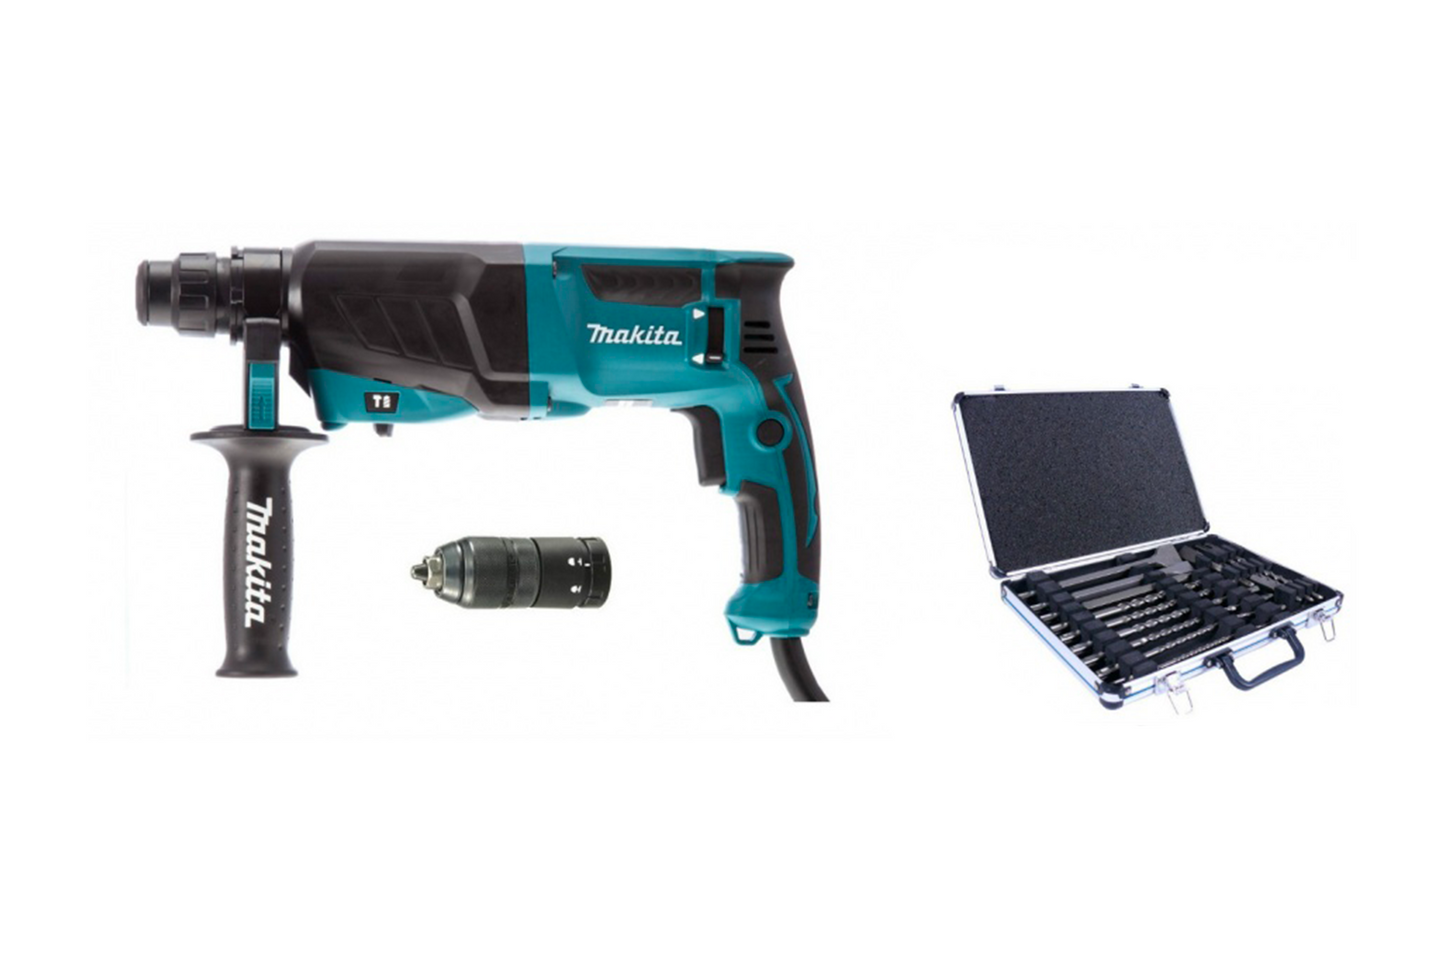 Makita HR2630TX12 hammer drill 